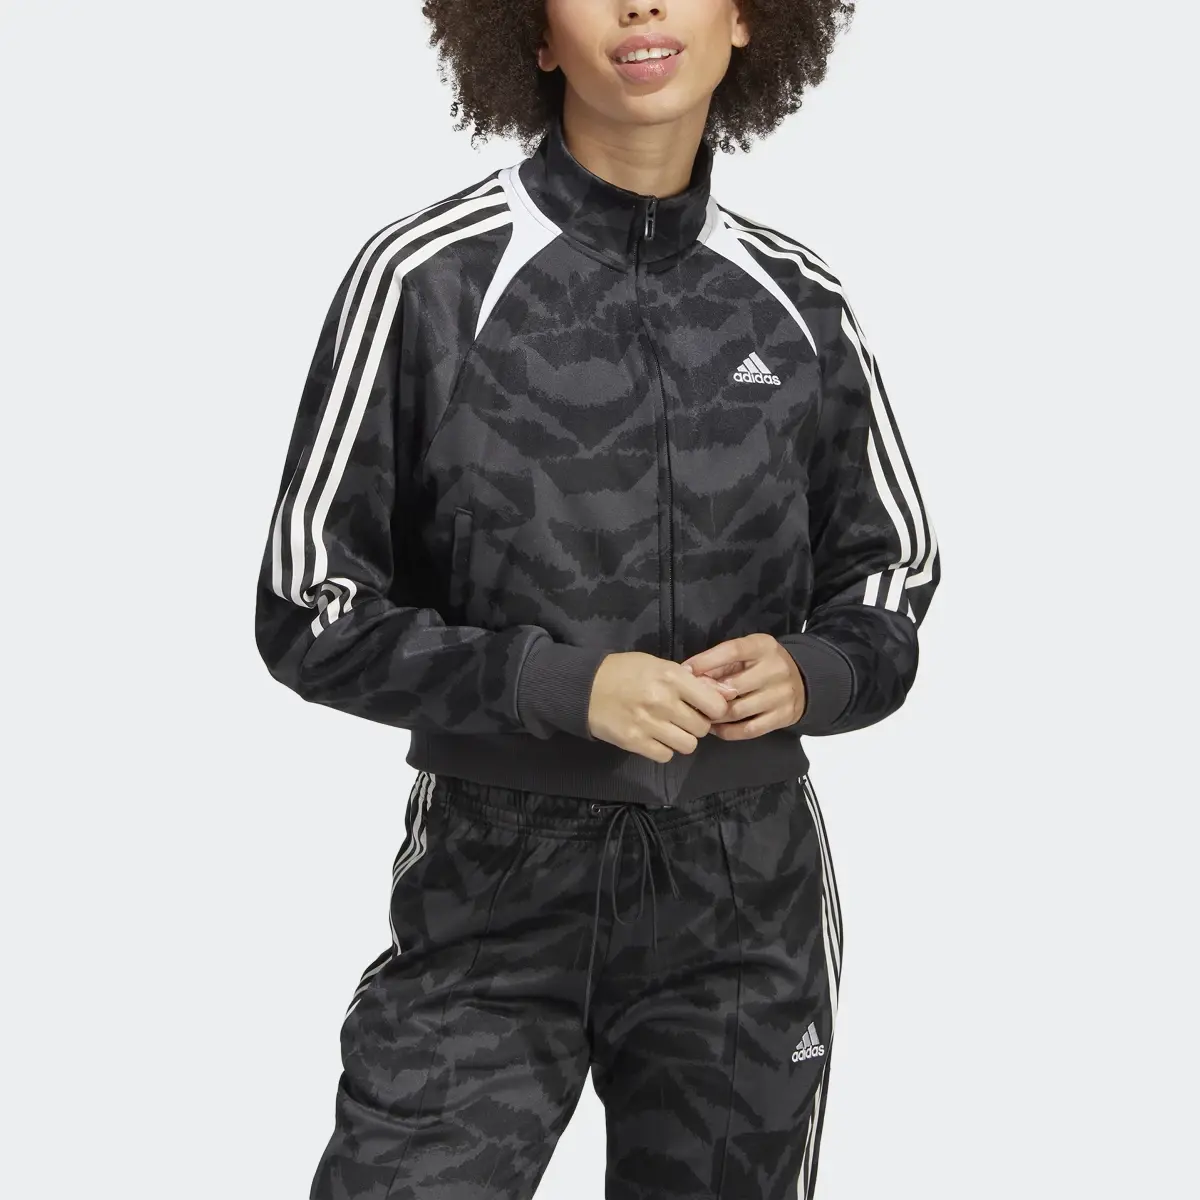 Adidas Tiro Suit Up Lifestyle Track Jacket. 1